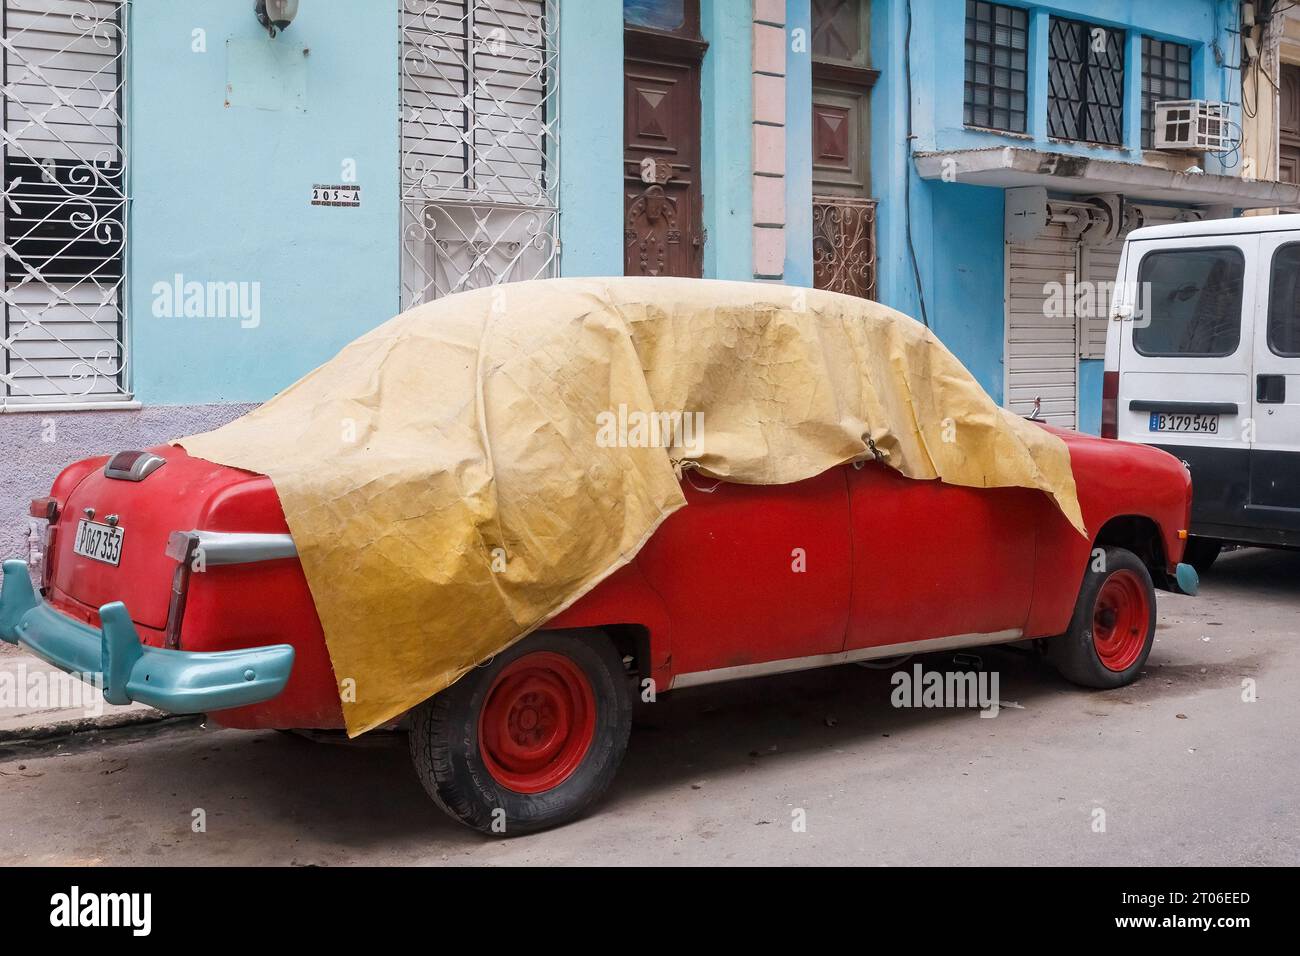 Une voiture américaine vintage rouge est recouverte d'une bâche. Le véhicule à moteur est stationné à l'extérieur des anciens bâtiments résidentiels. Banque D'Images